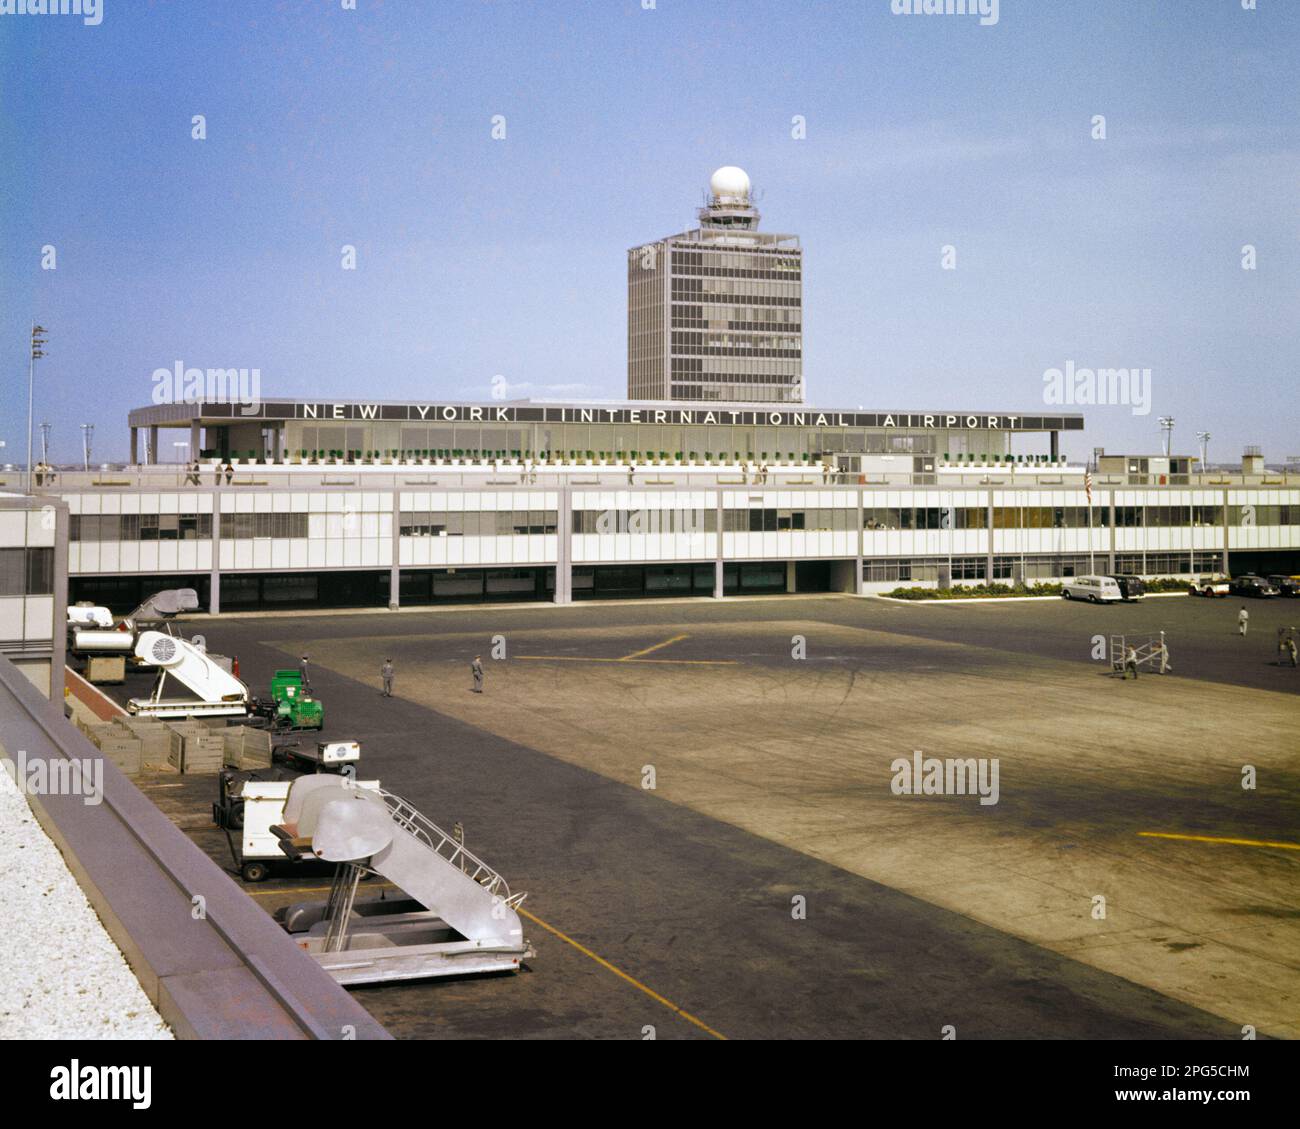 1950S NEW YORK INTERNATIONAL AIRPORT WIRD GEMEINHIN ALS IDLEWILD AIRPORT BEZEICHNET, ABER 1963 IN JOHN F. KENNEDY INTERNATIONAL UMBENANNT - KA701 HAR001 HARS HIGH-TECH-IMMOBILIENVERBINDUNG KONTROLLTURM F IDLEWILD NEW YORK STRUCTURES GEBÄUDE NEW YORK CITY UMBENANNT IN KENNEDY TERMINAL 1963 HAR001 INTERNATIONAL OLD FASHIONED Stockfoto